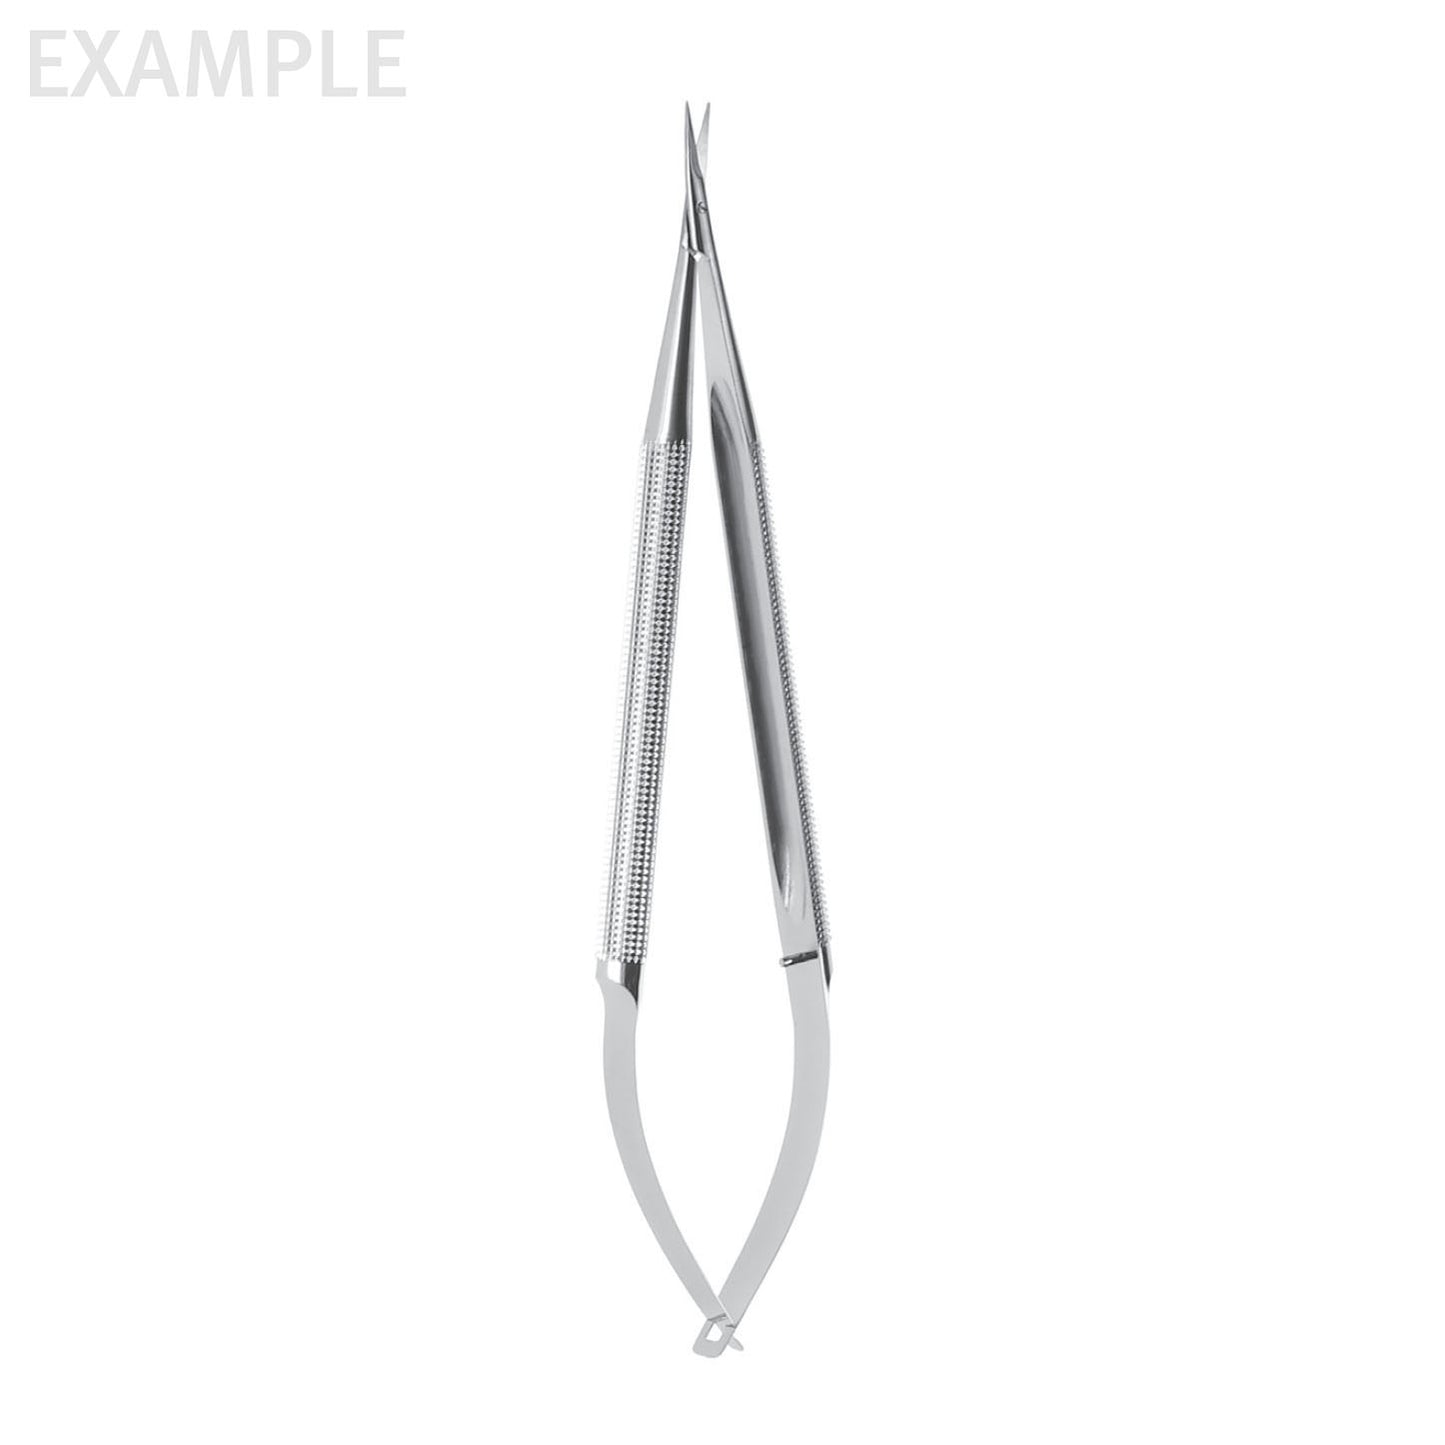 8 1/4Adventia Suture Scissors curved blades 18mm